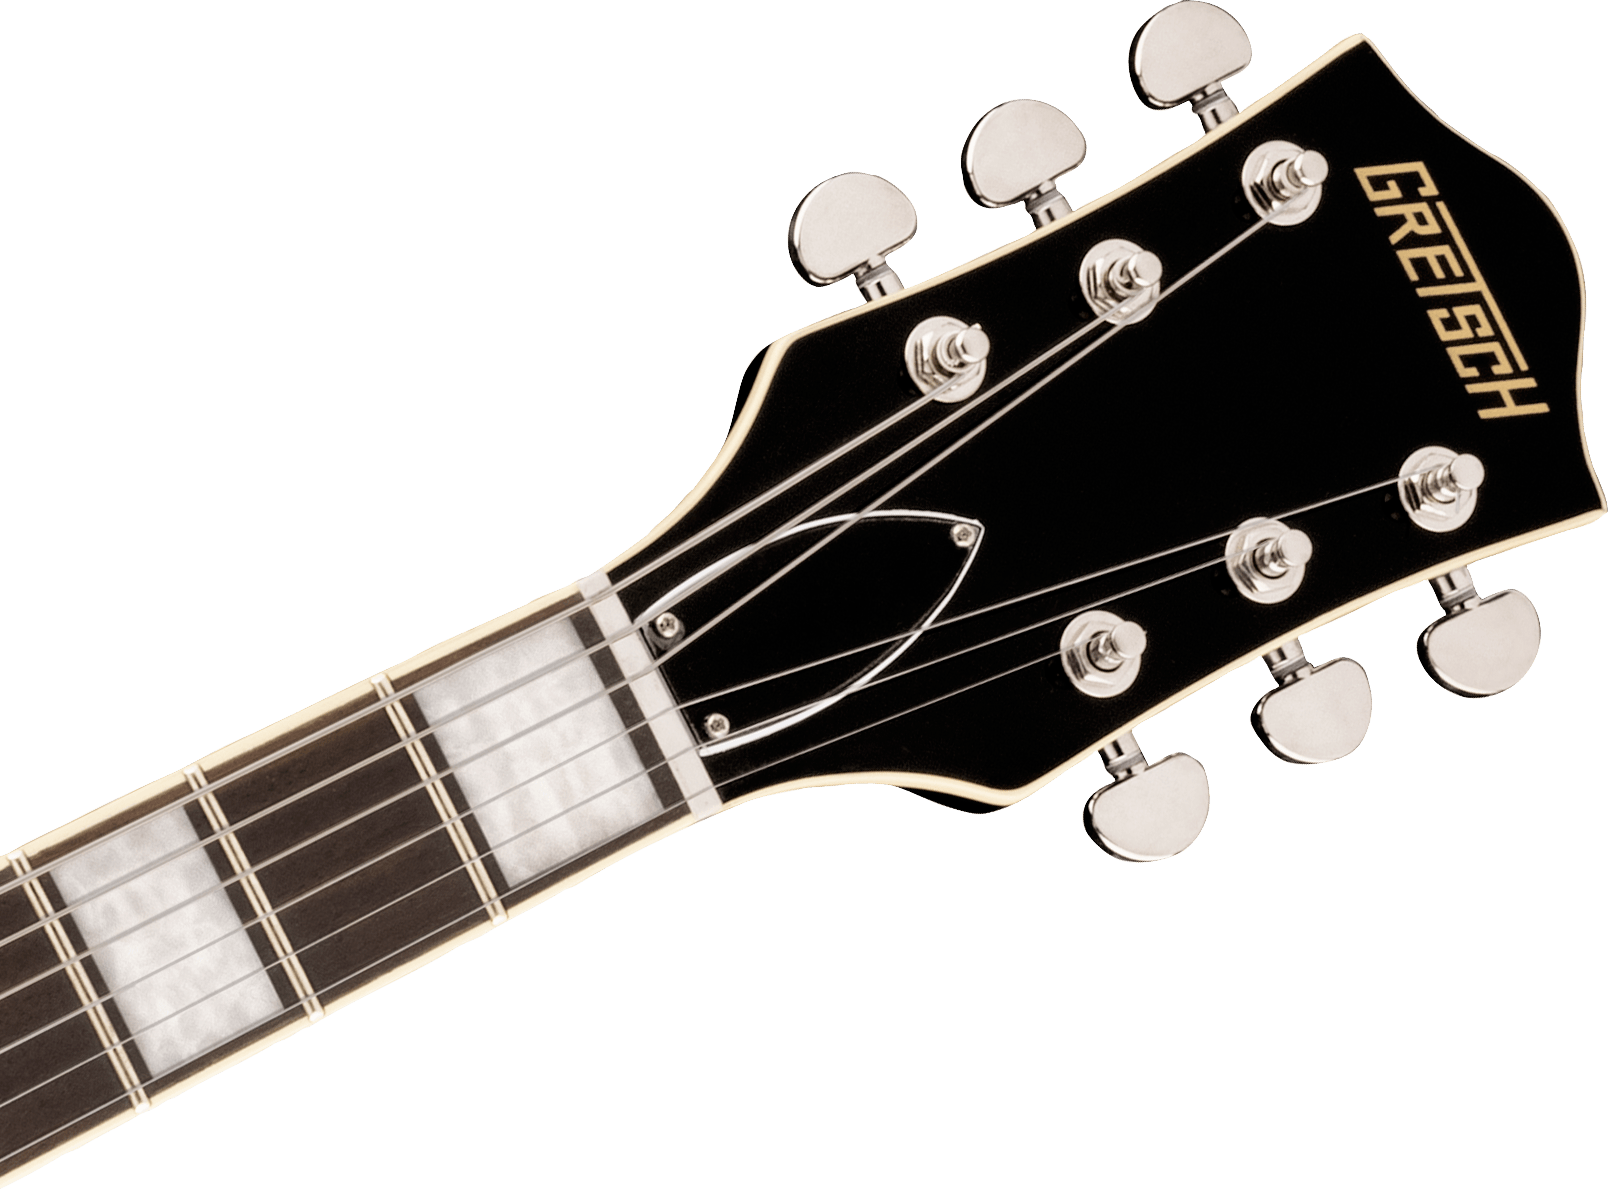 Gretsch G2622 Streamliner Center Block Semi-Hollow Electric Guitar - Sapphire